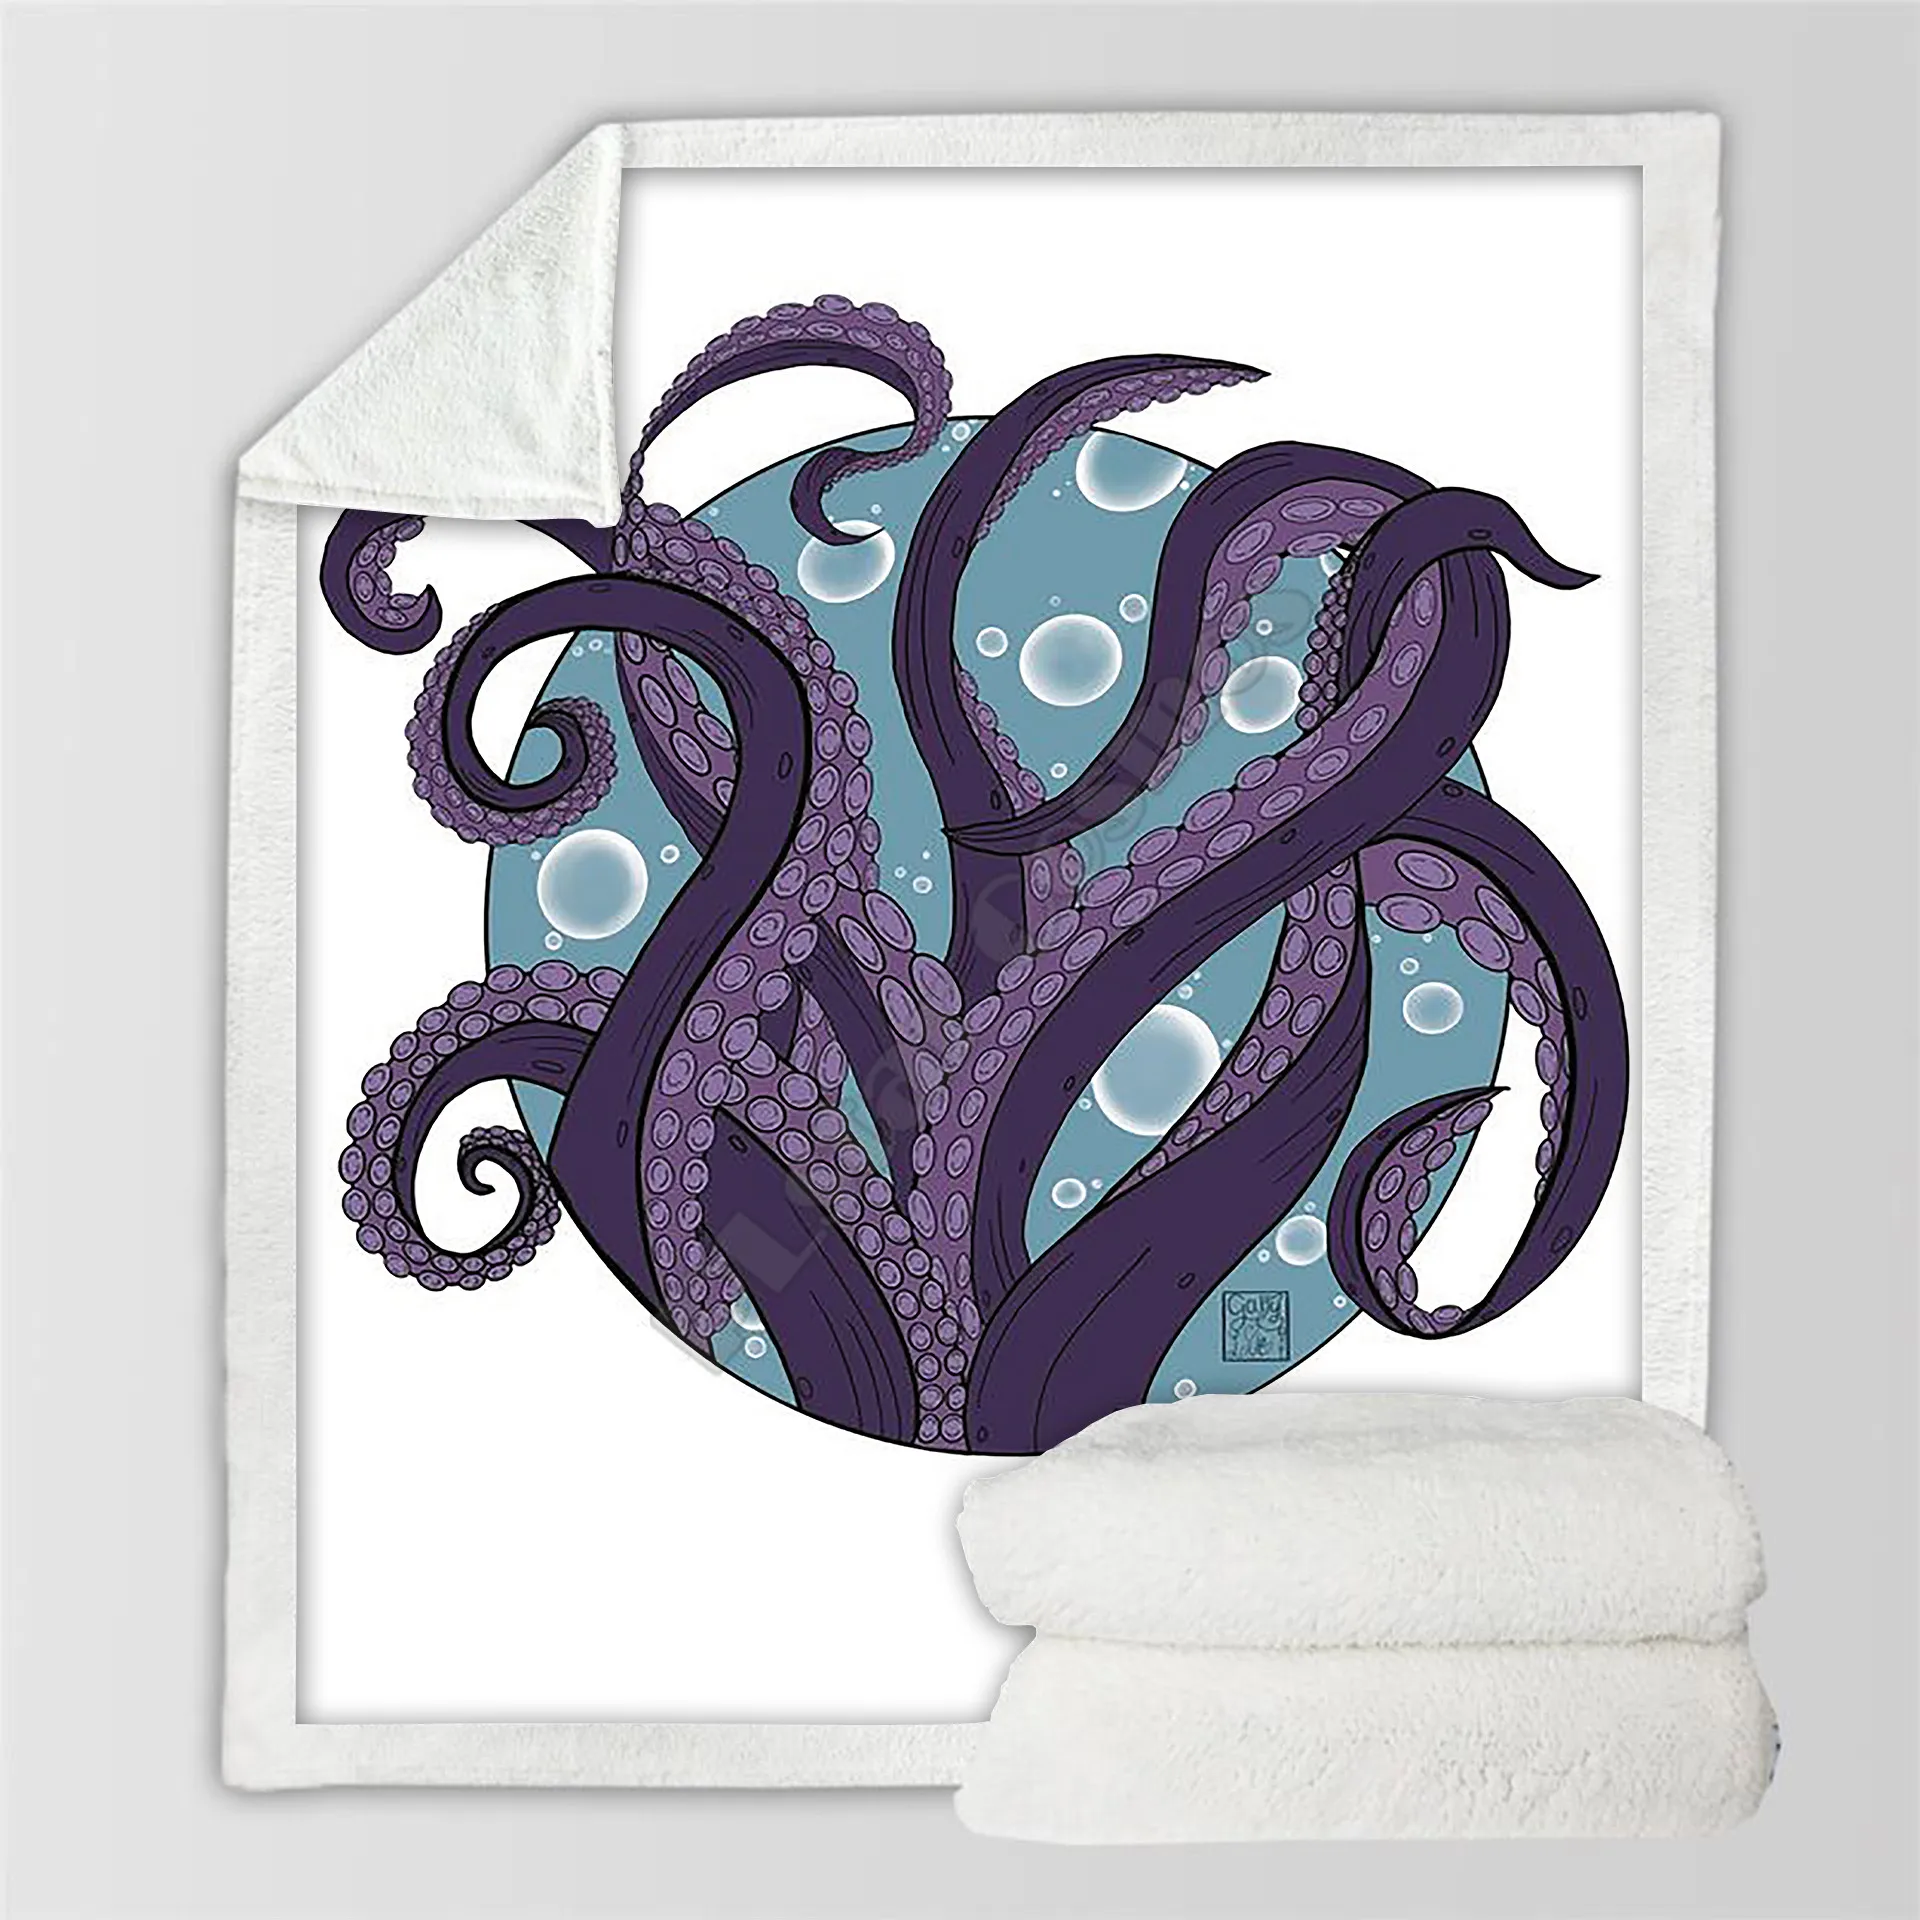 Флисовое одеяло Plstar Cosmos Octopus с 3D принтом Шерп Одеяло на кровать Домашний текстиль Сказочный стиль-2